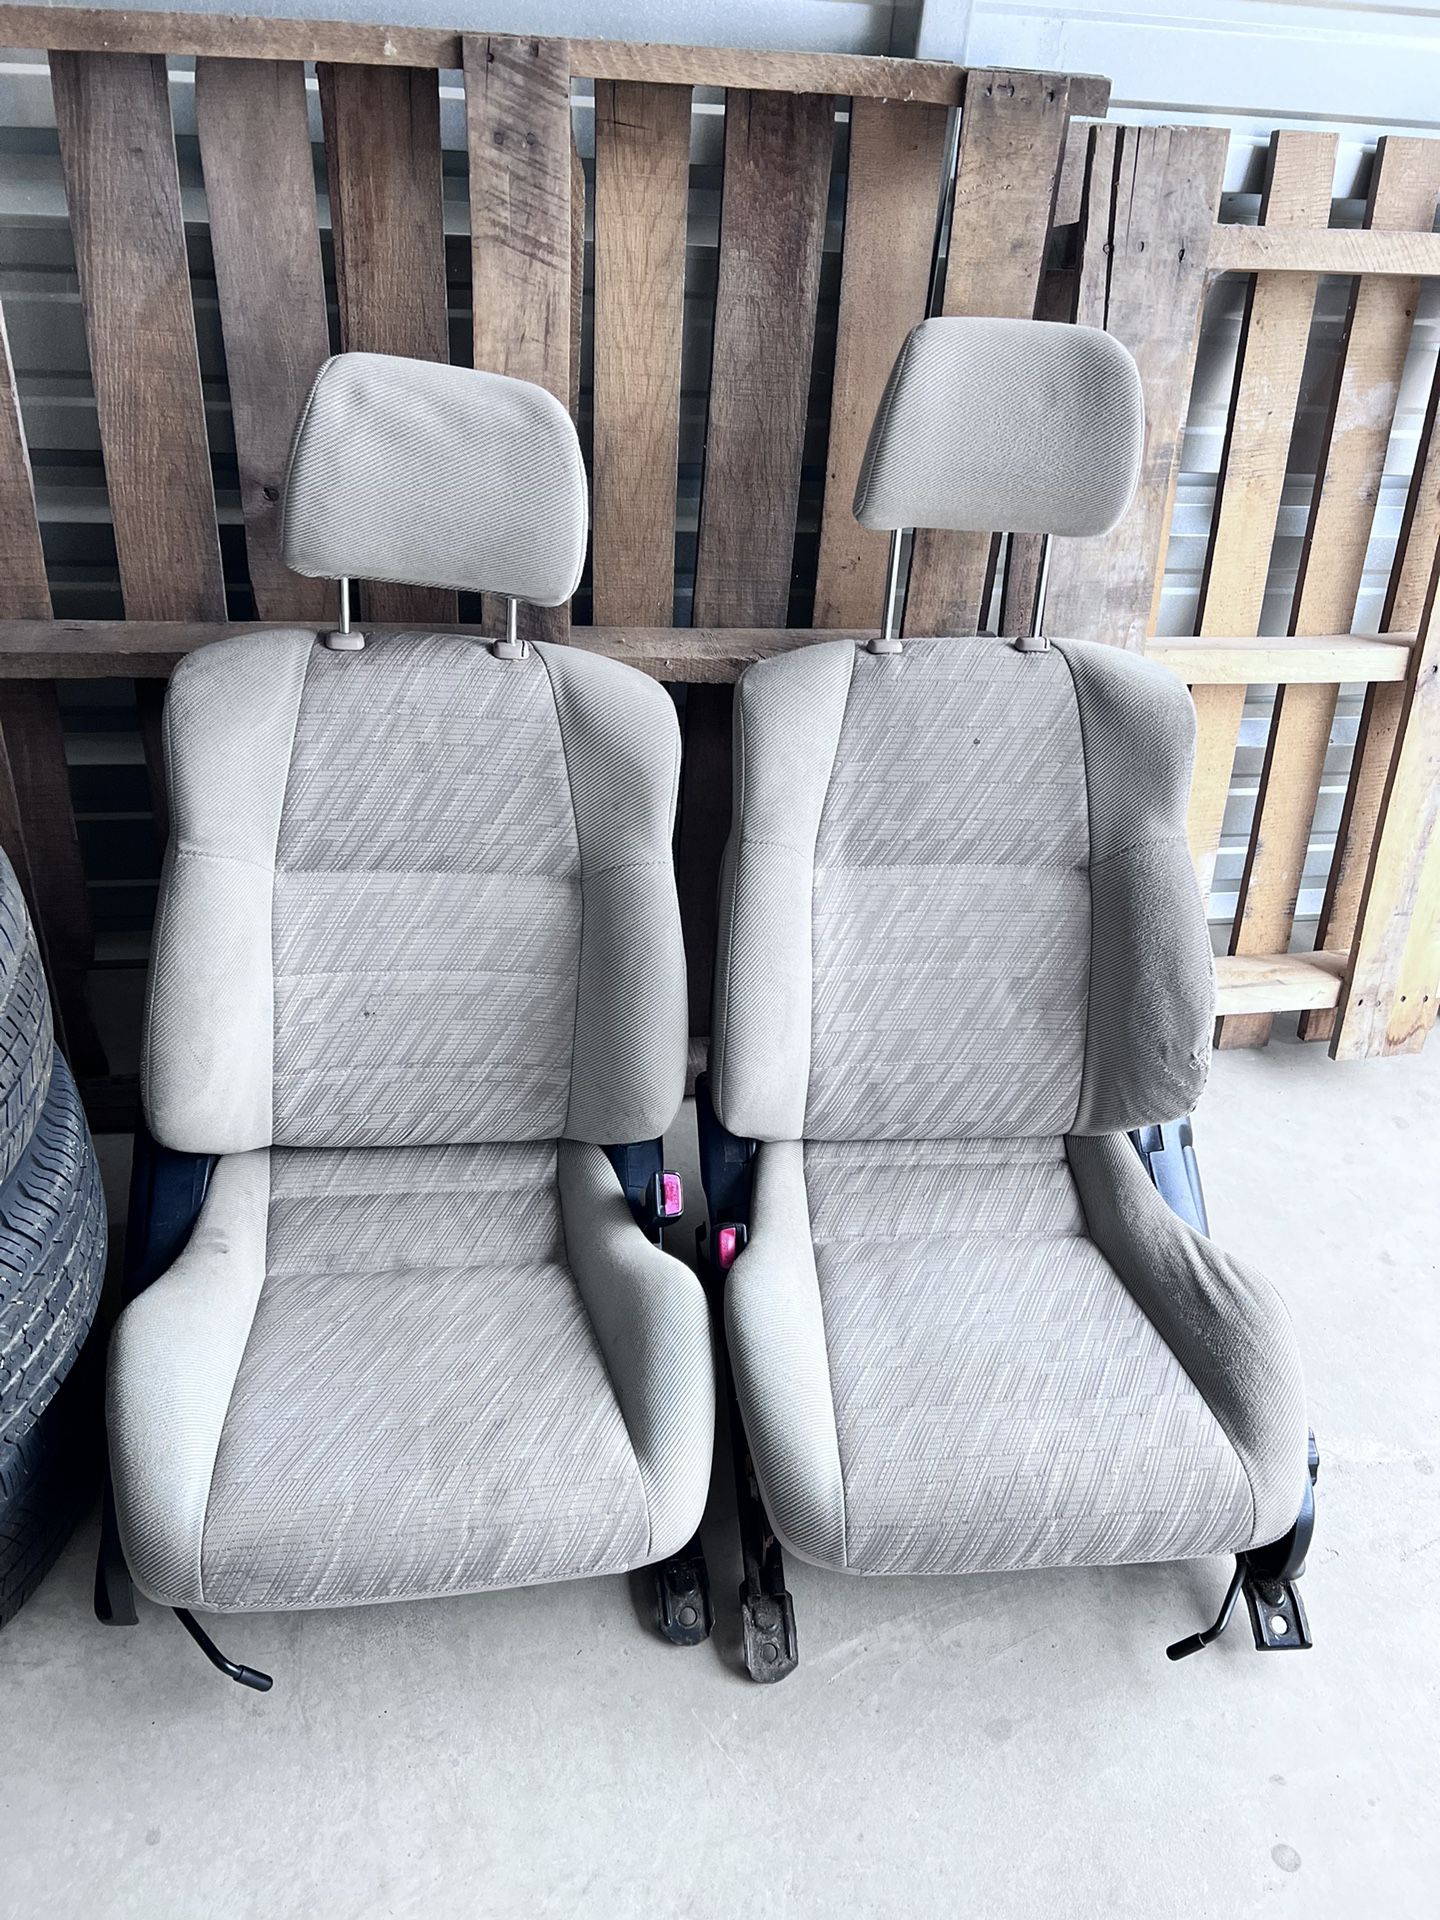 94-99 Toyota Celica Seats